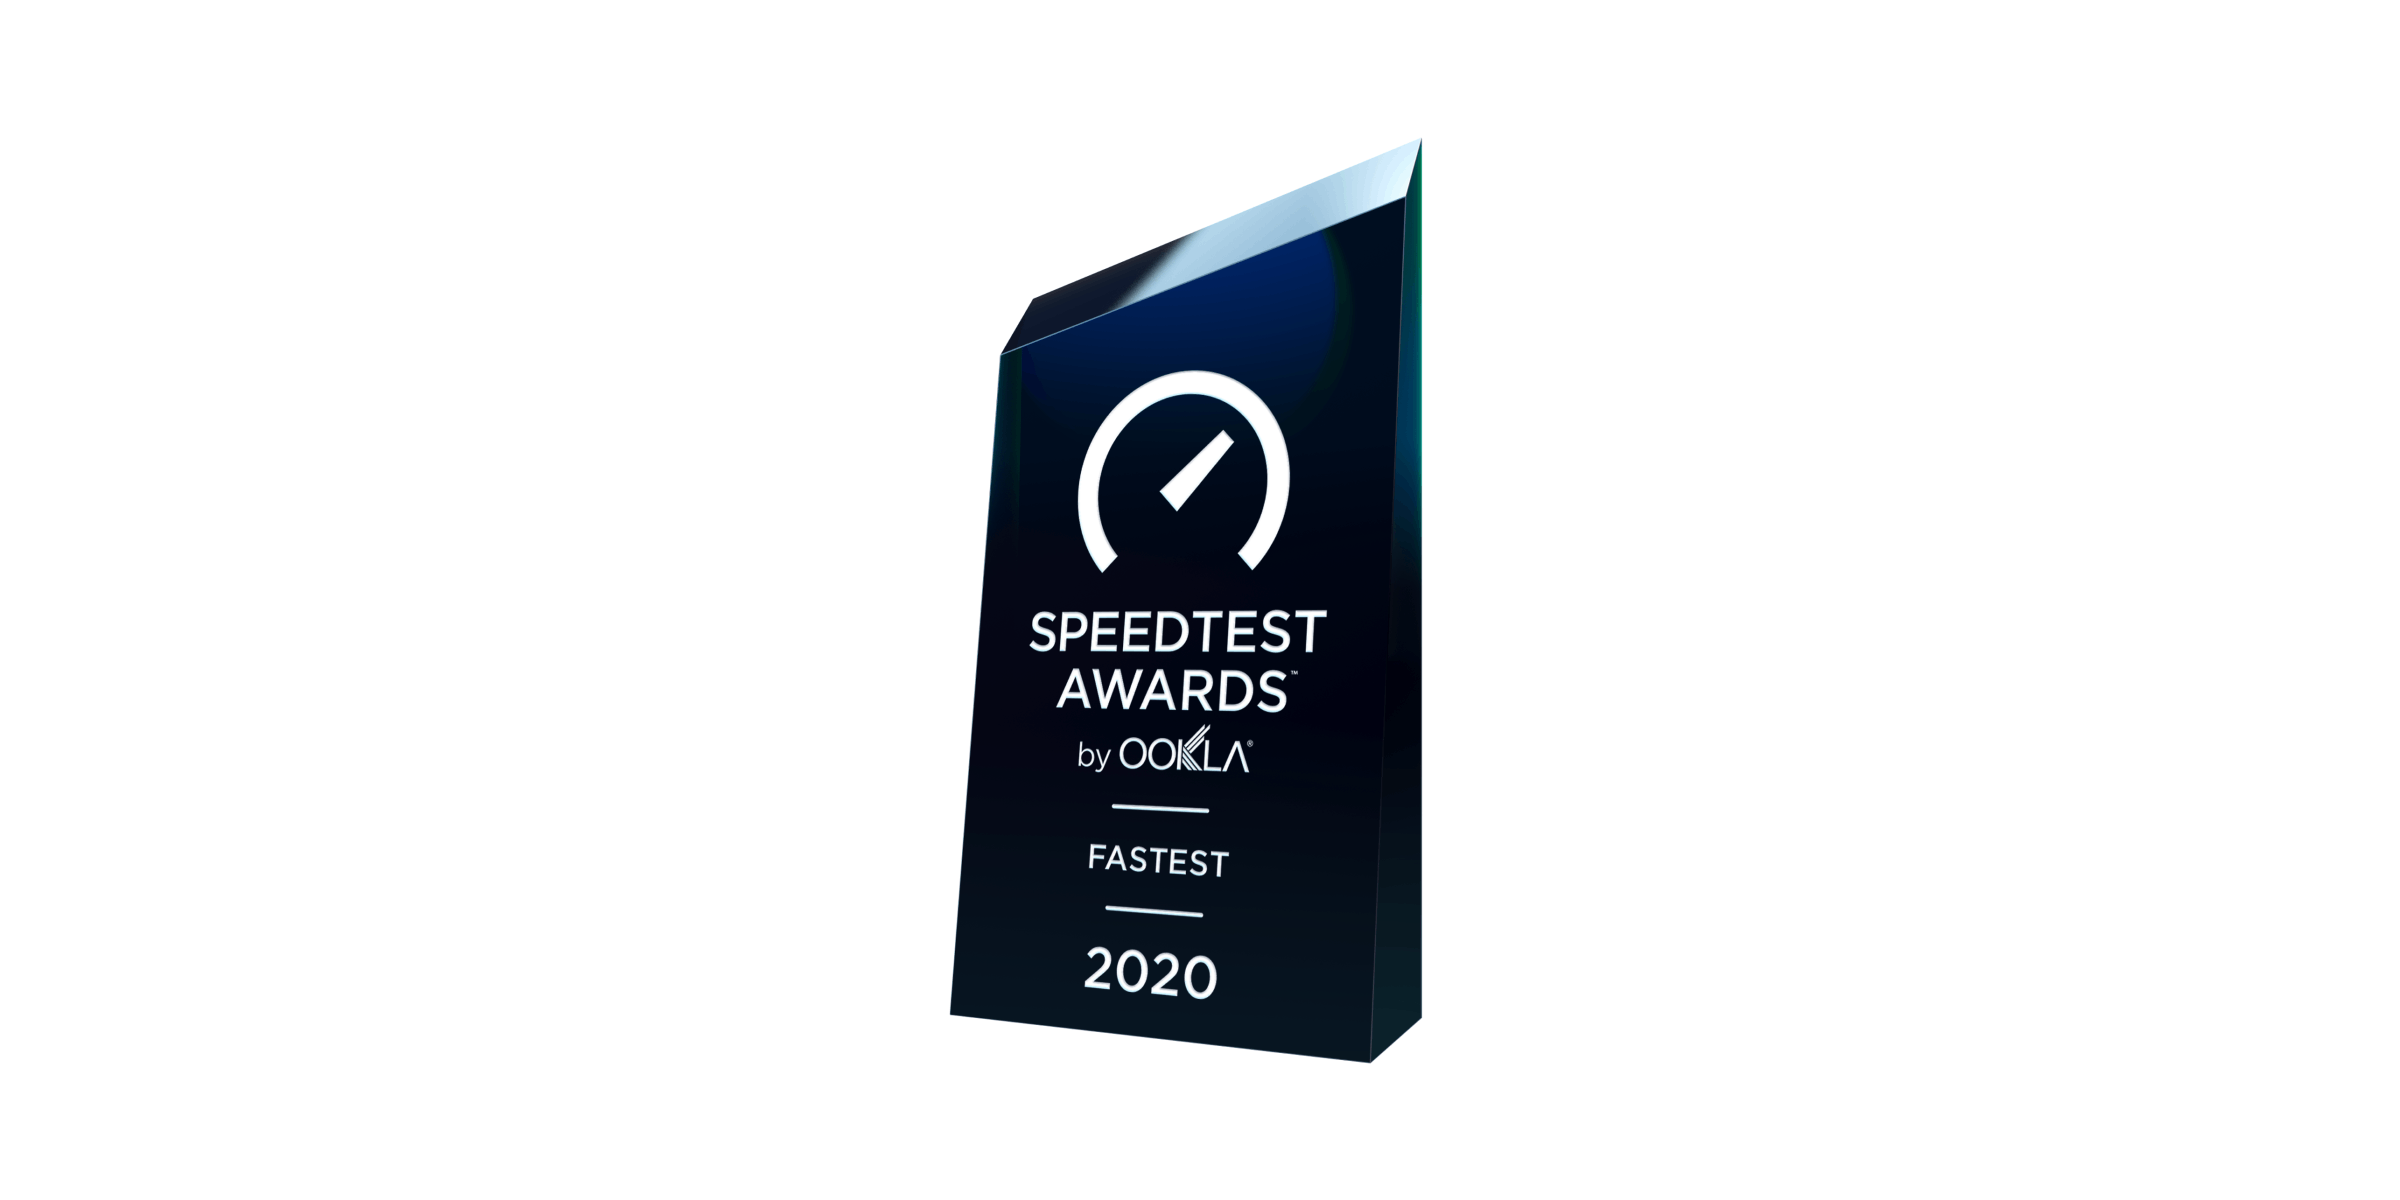 Speedtest awards fastest 2020